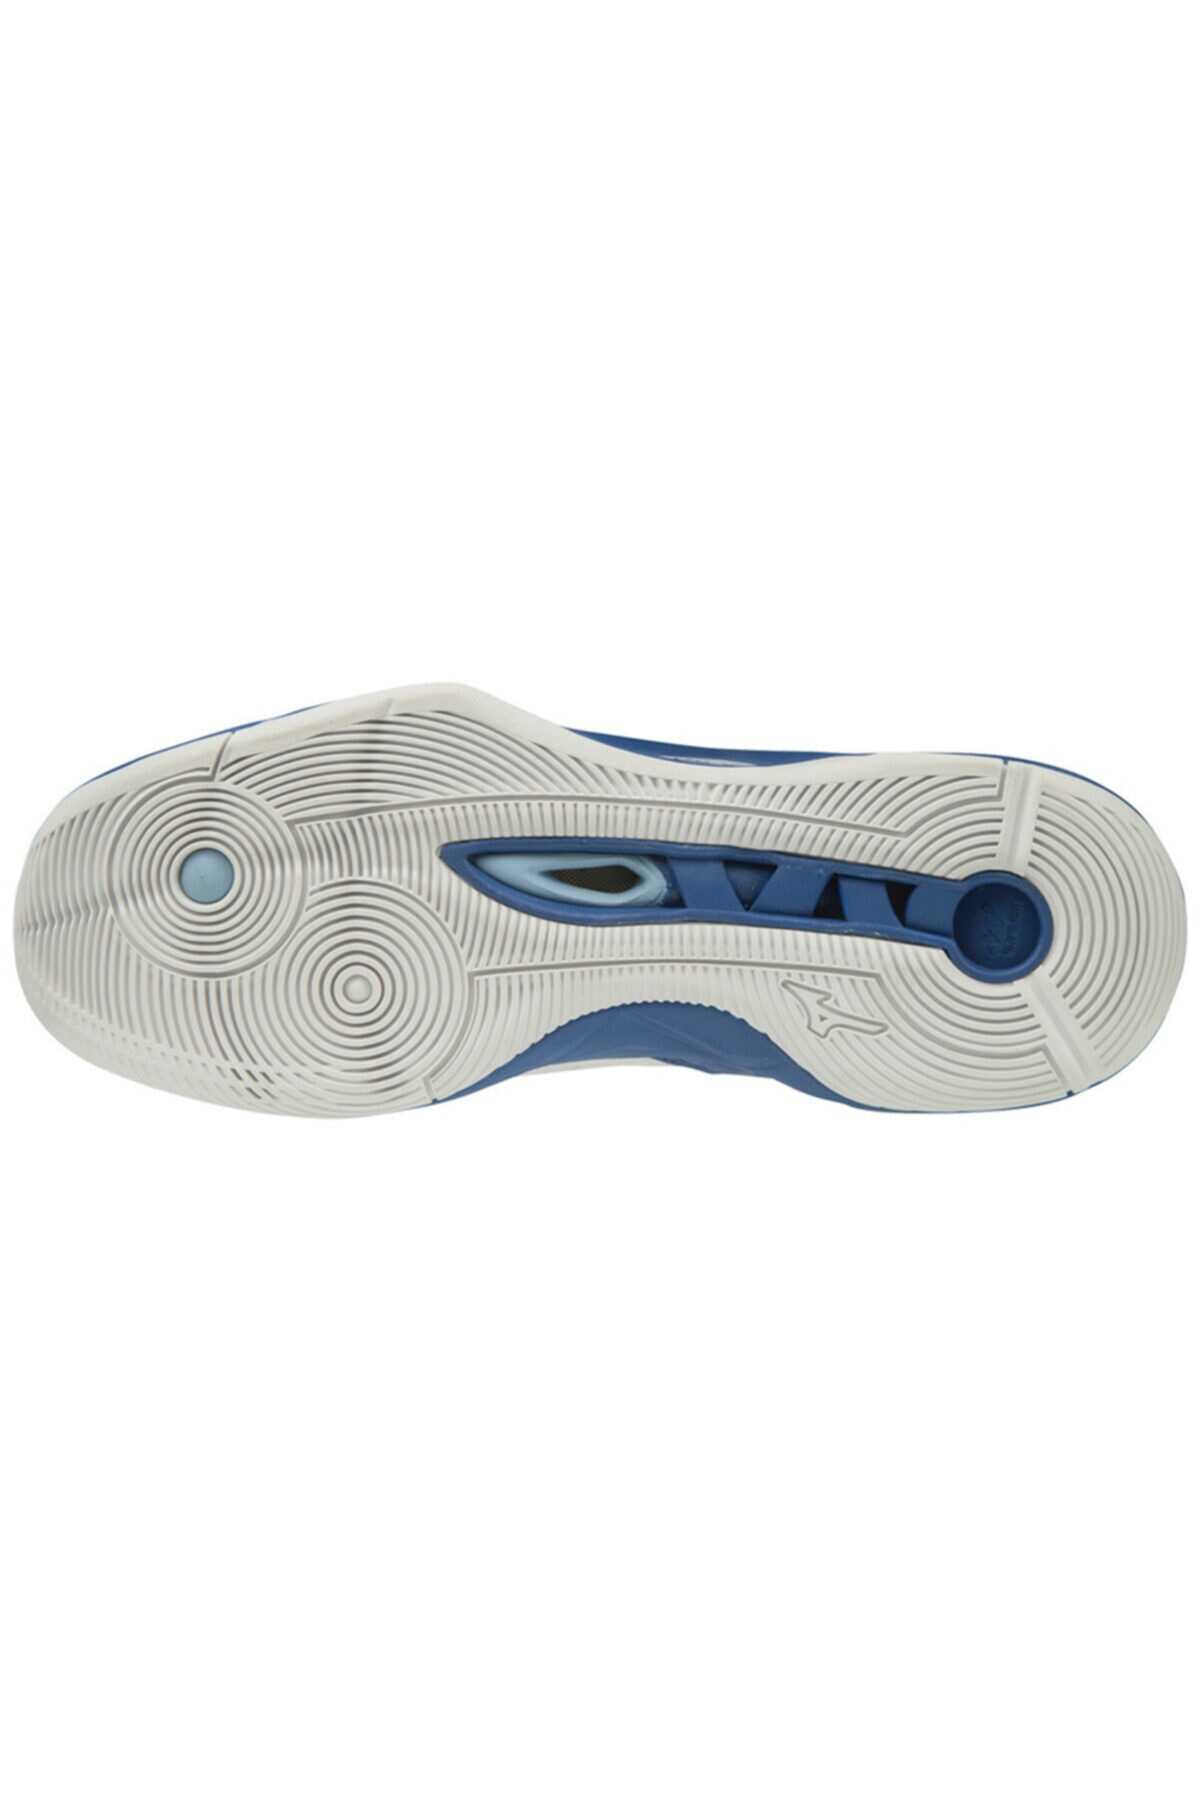 کفش والیبال مردانه دو رنگ سفید آبی مدل Wave Momentum برند MIZUNO 